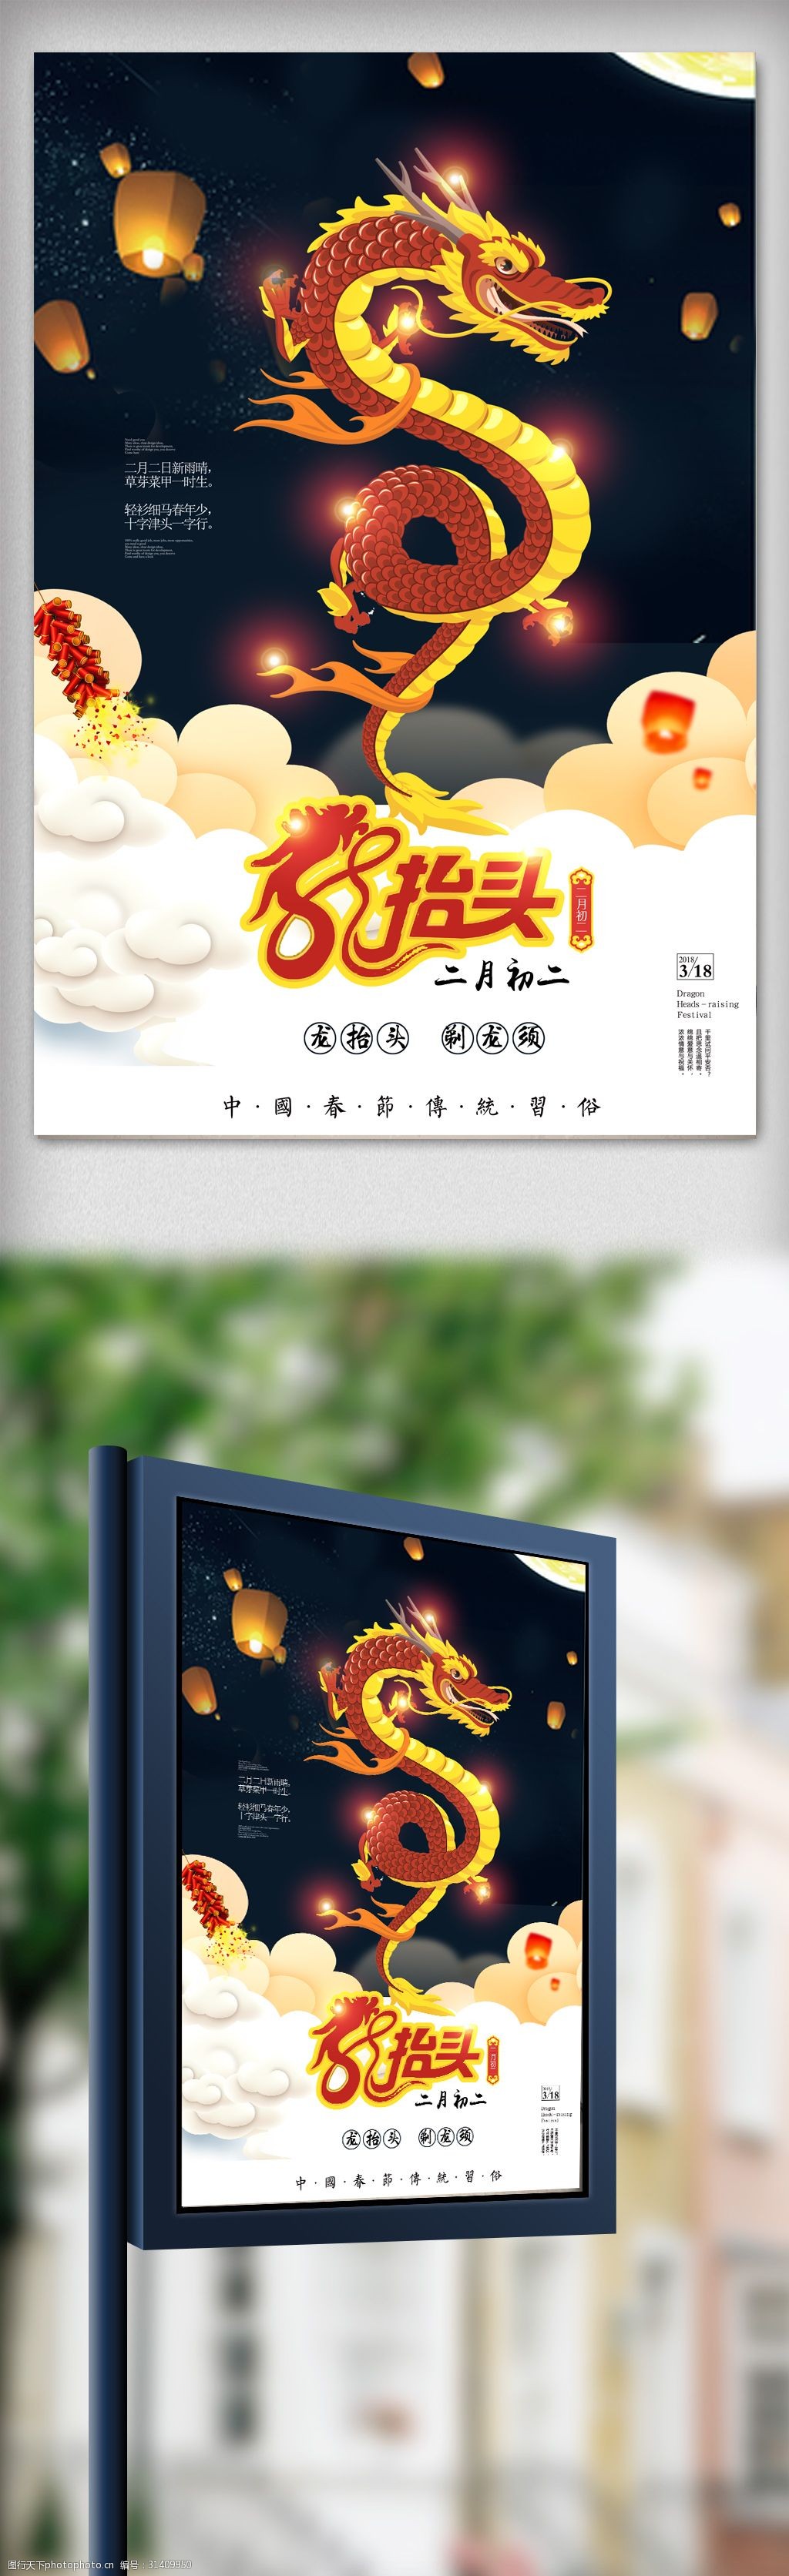 中国传统节日二月初二龙抬头海报设计